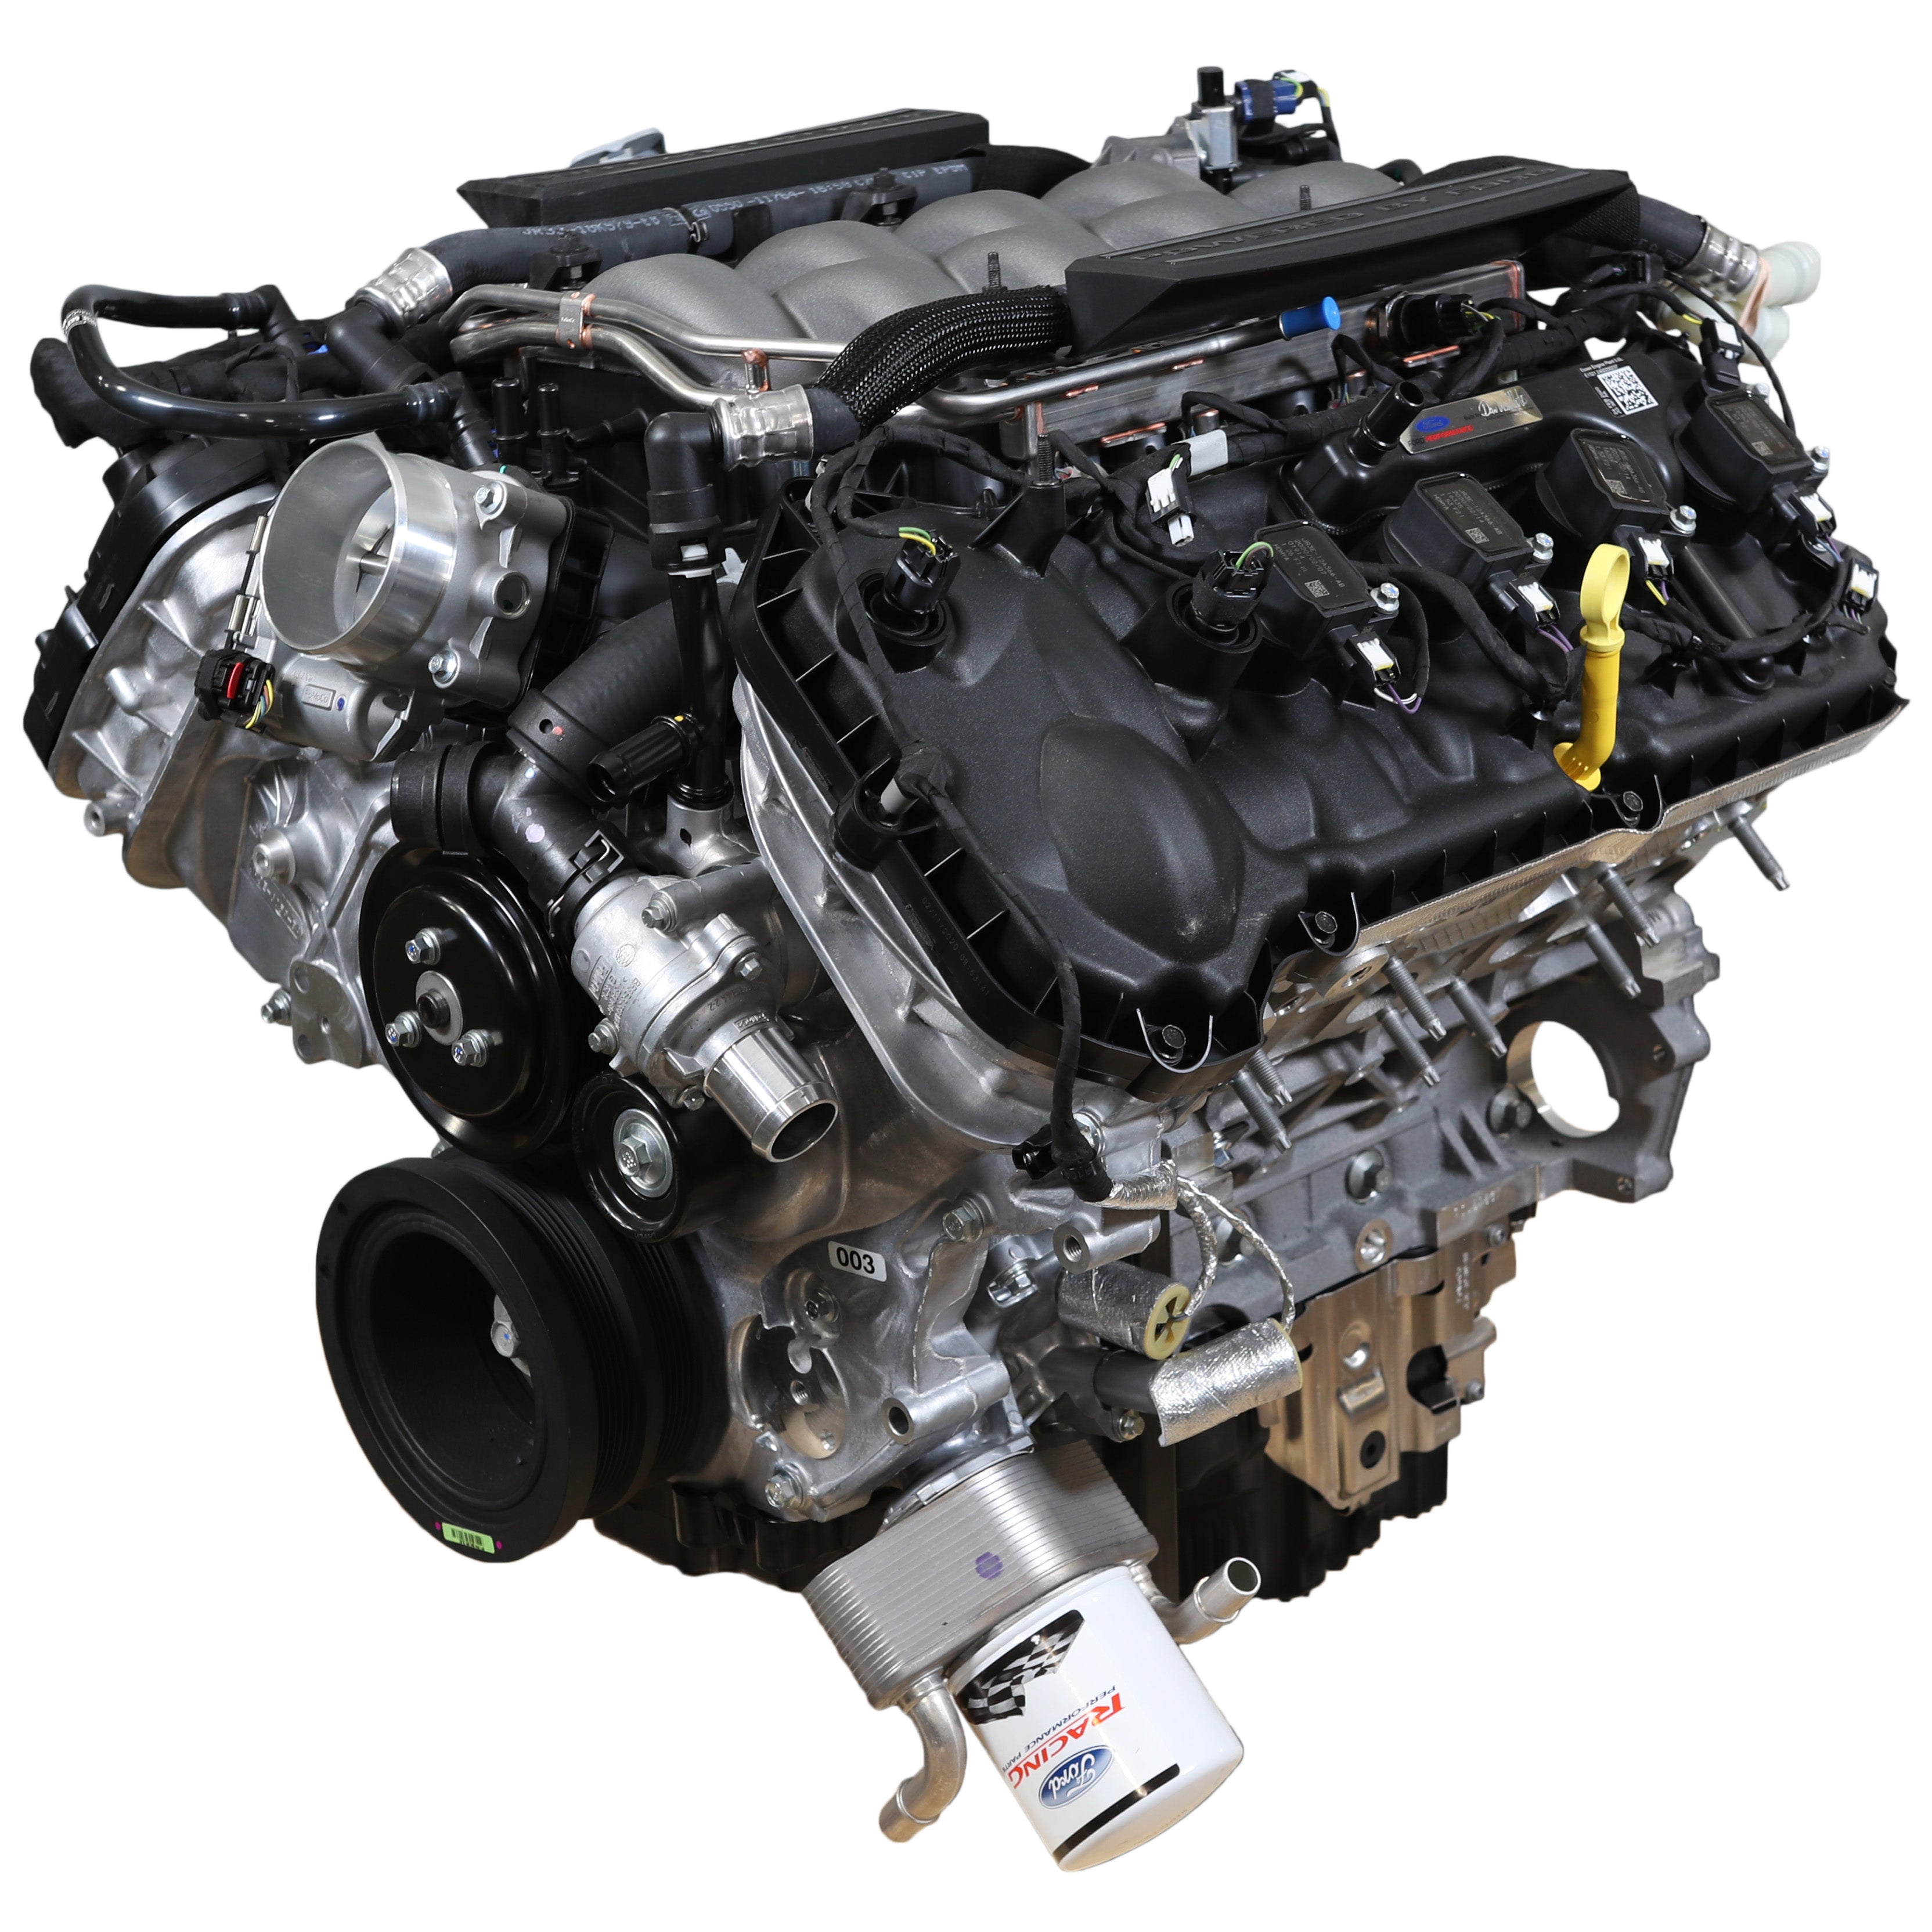 Κινητήρας Ford Performance 5.0L "Aluminator" Gen 3 Crate - Χαμηλή συμπίεση για κατασκευές FI